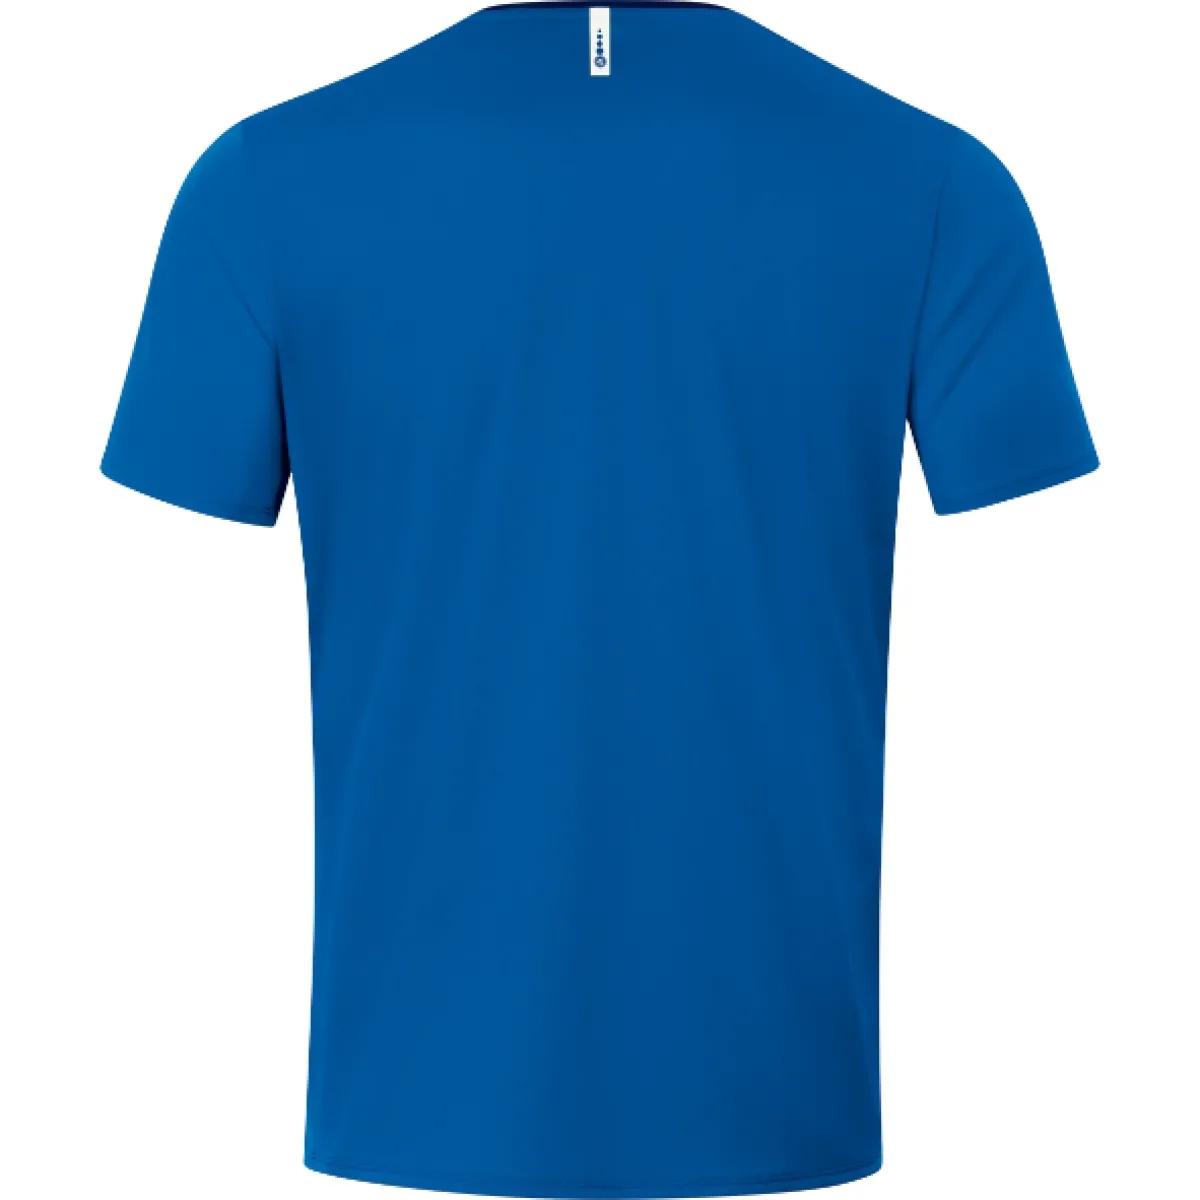 Jako T-shirt Champ 2.0 royal/navy for women, men and children